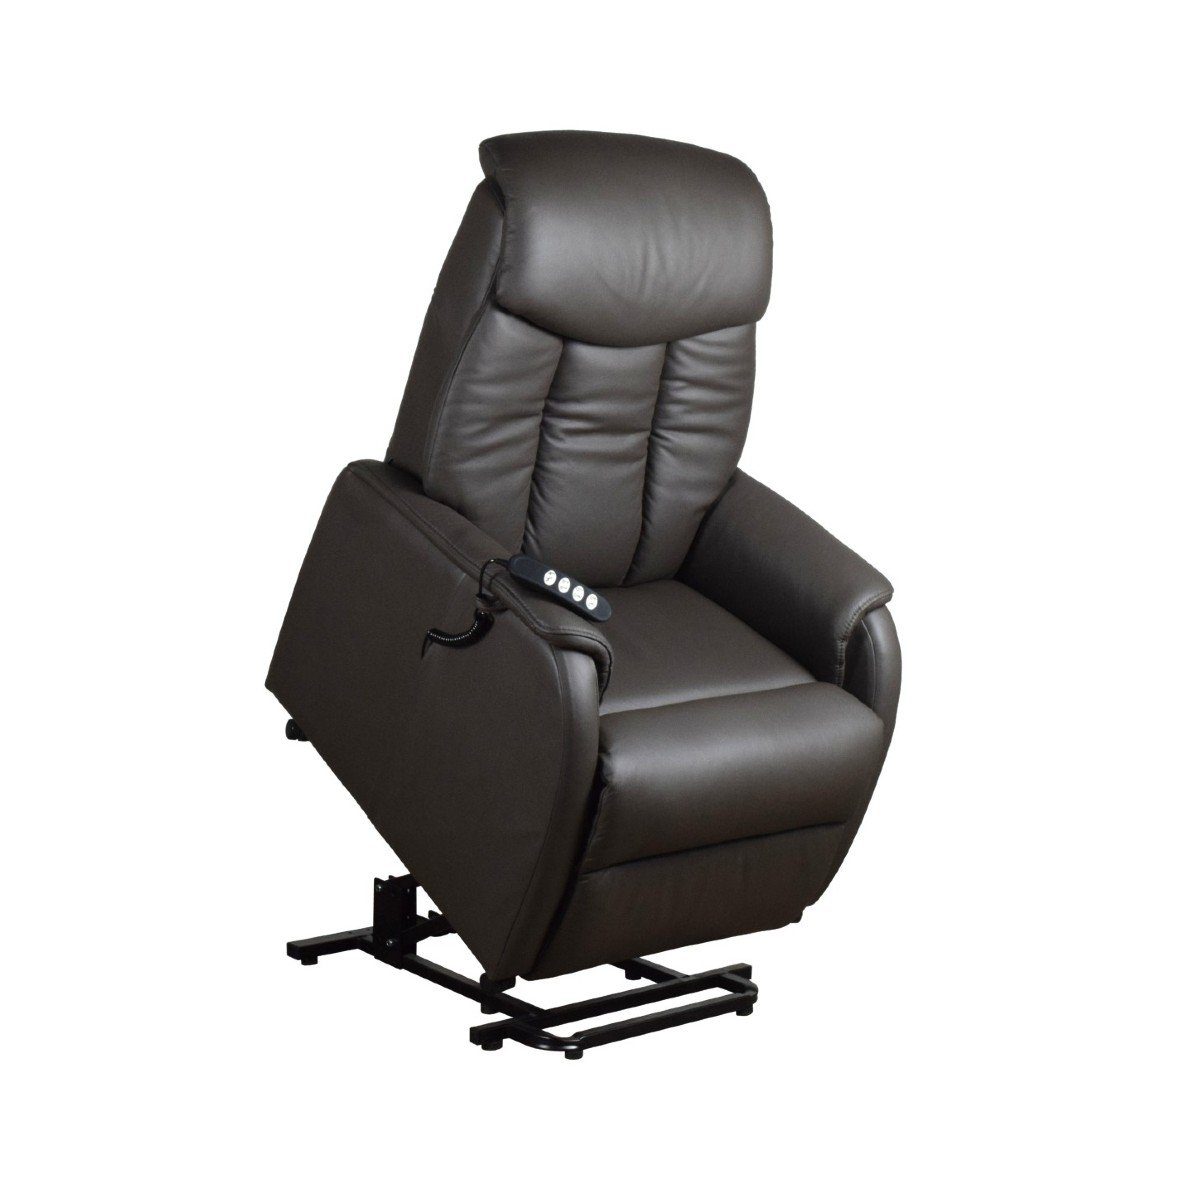 TV-Sessel XL, louming Verstellung KG, Verstellung Belastbar 150 3-motorische Malaga mit Fernbedienung durch Aufstehhilfe, bis